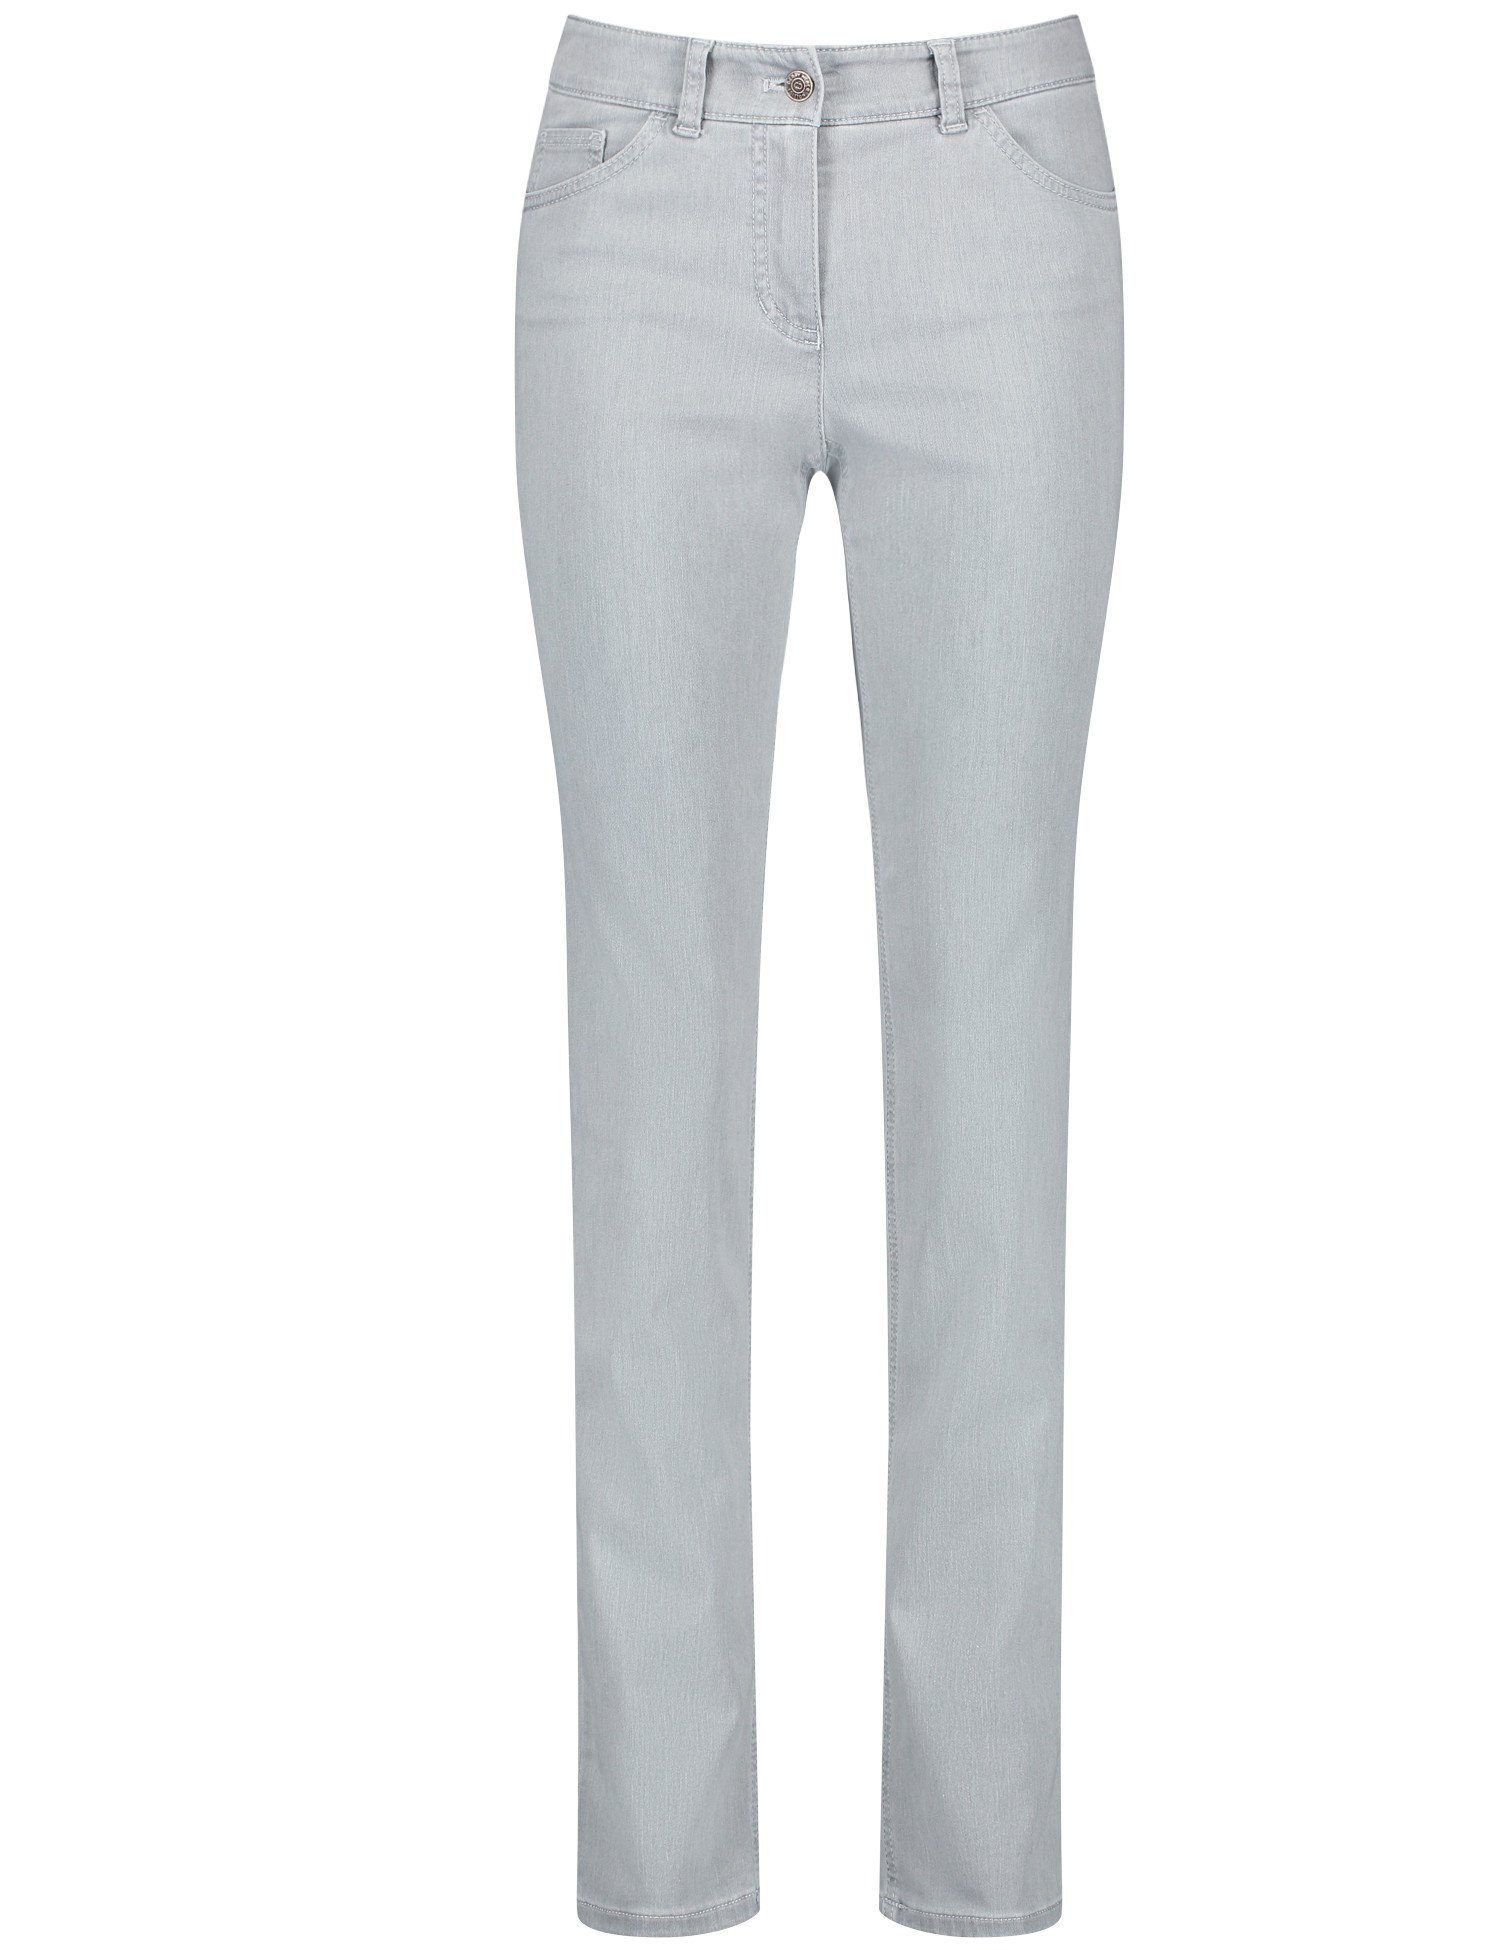 grey Hose Slim Slim-fit-Jeans WEBER Fit GERRY denim 5-pocket light